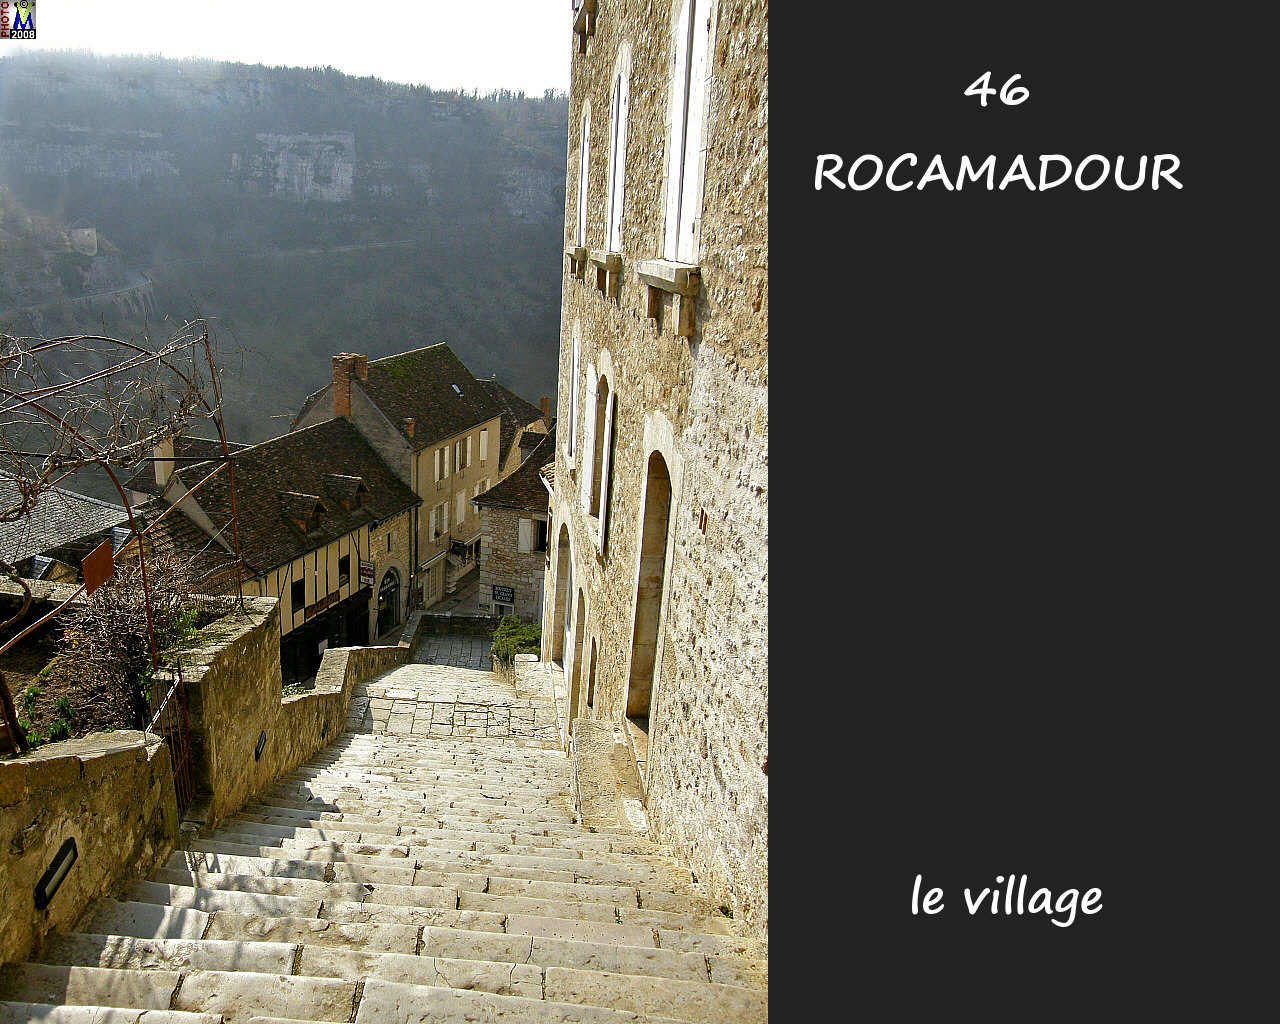 46ROCAMADOUR_village_186.jpg